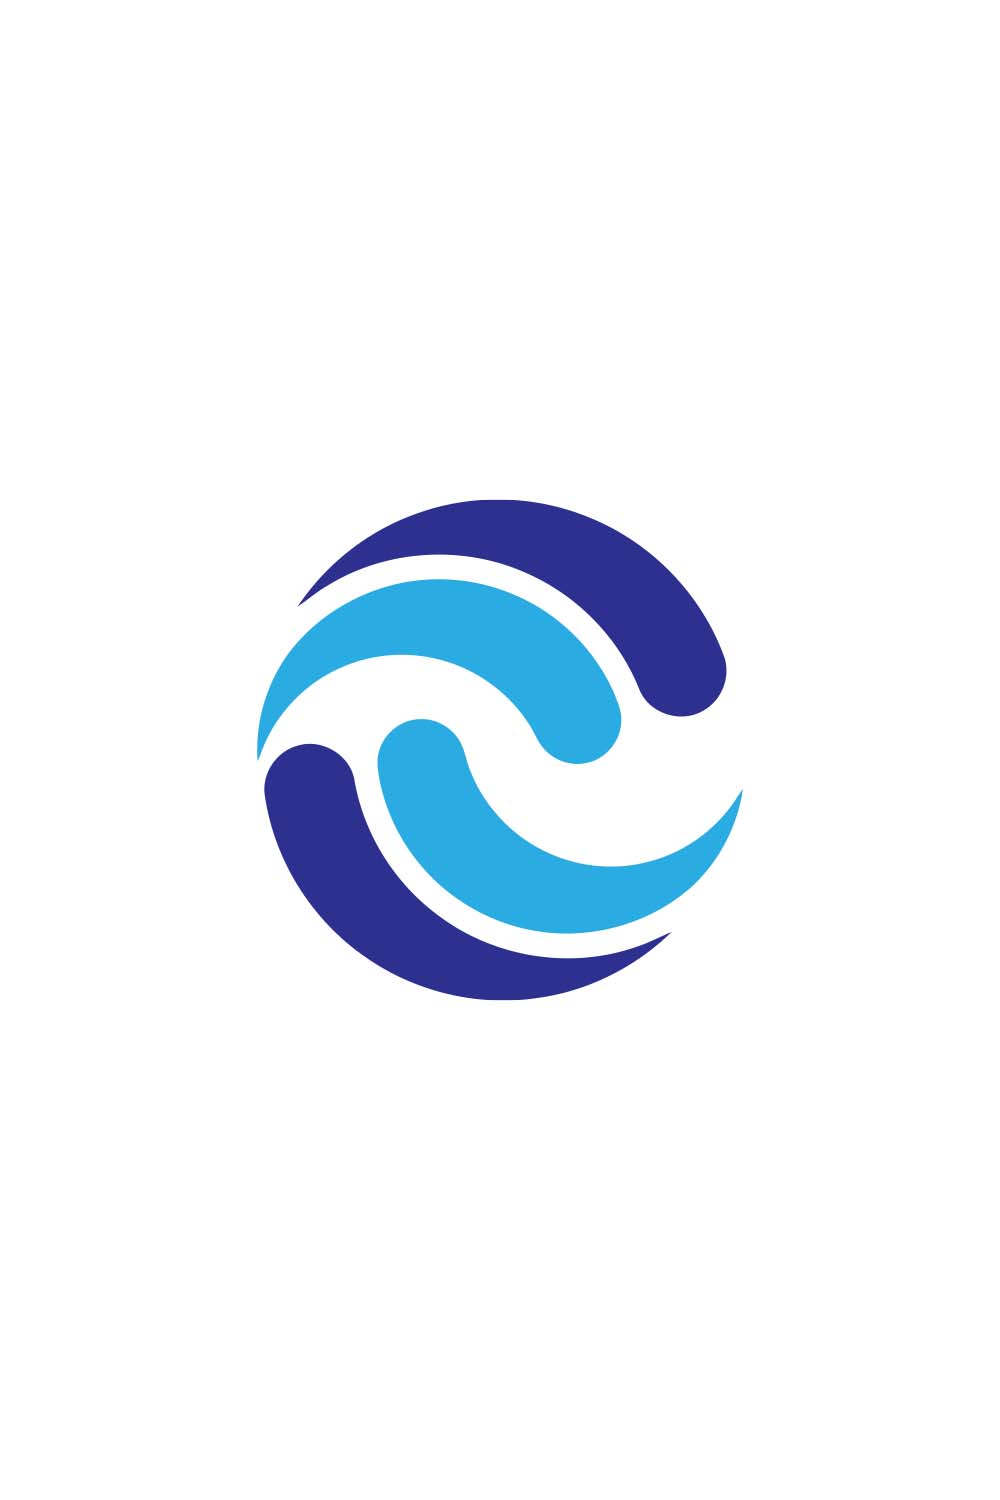 C Letter Logo Design pinterest image.